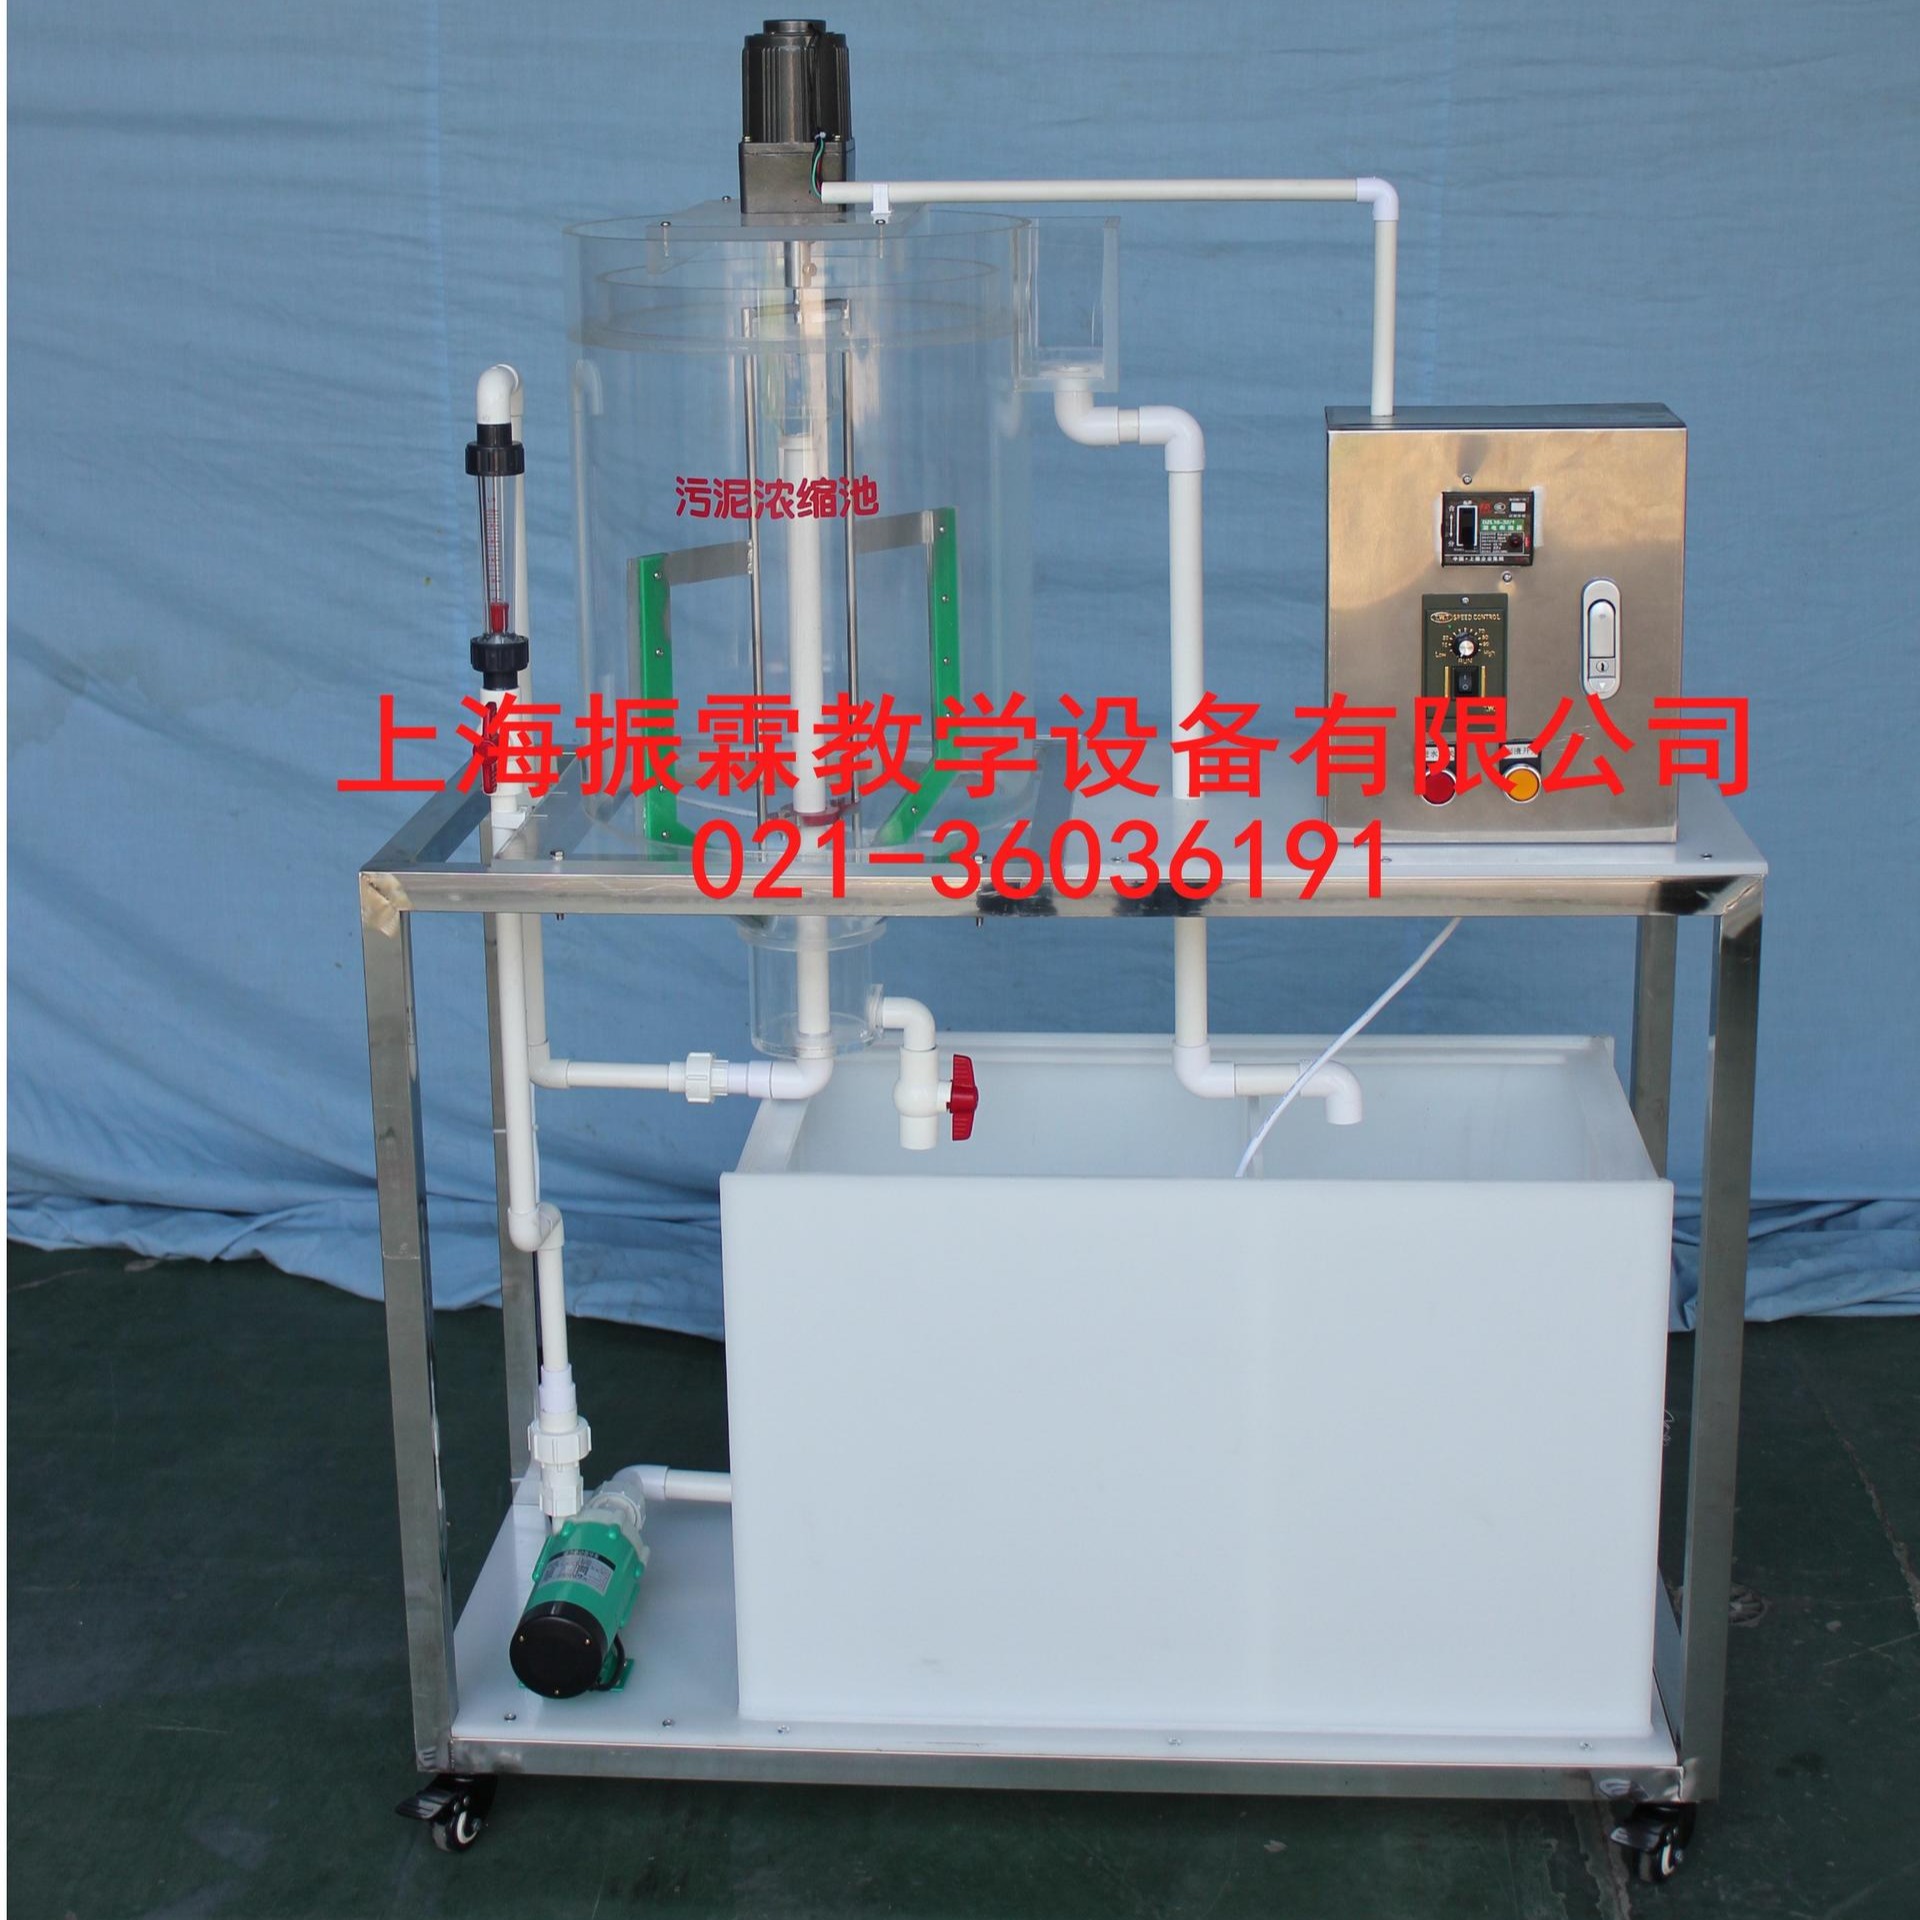 ZLHJ-V186型浓缩池装置（中心传动靶子式） 浓缩池设备 浓缩池试验设备 上海振霖  专业制造